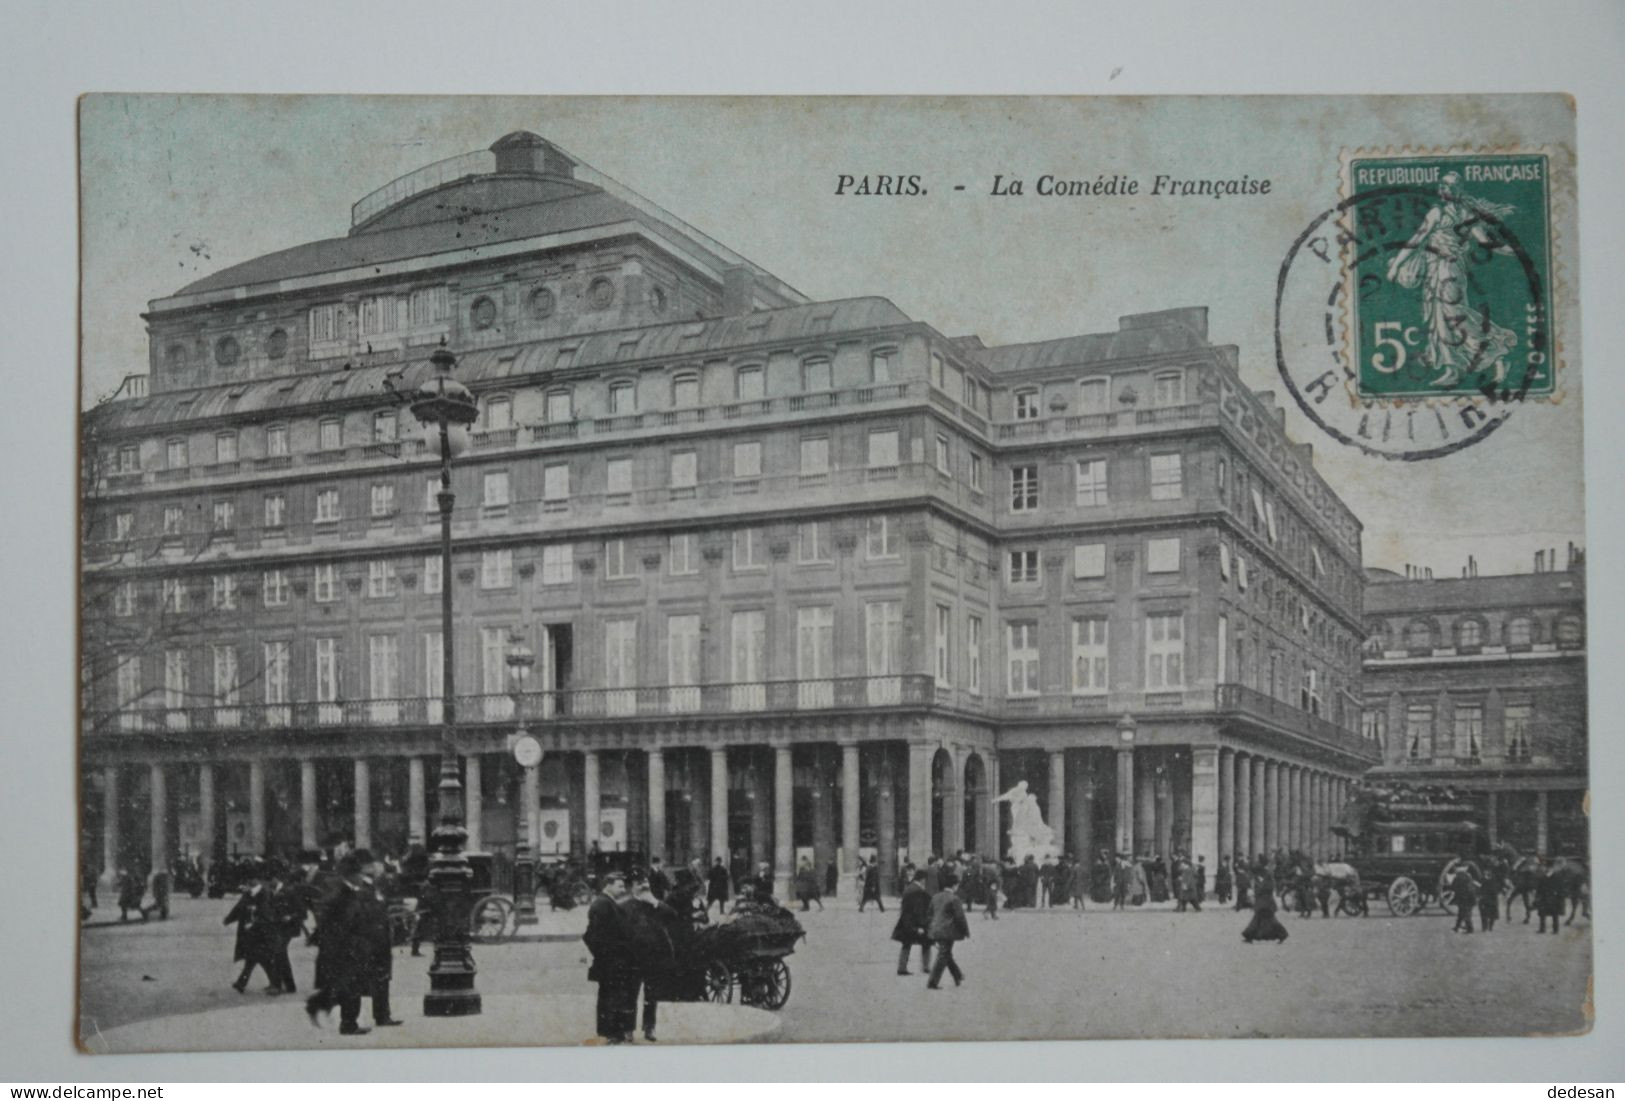 CPA Couleur 1910 PARIS La Comédie Française - CHA03 - Education, Schools And Universities